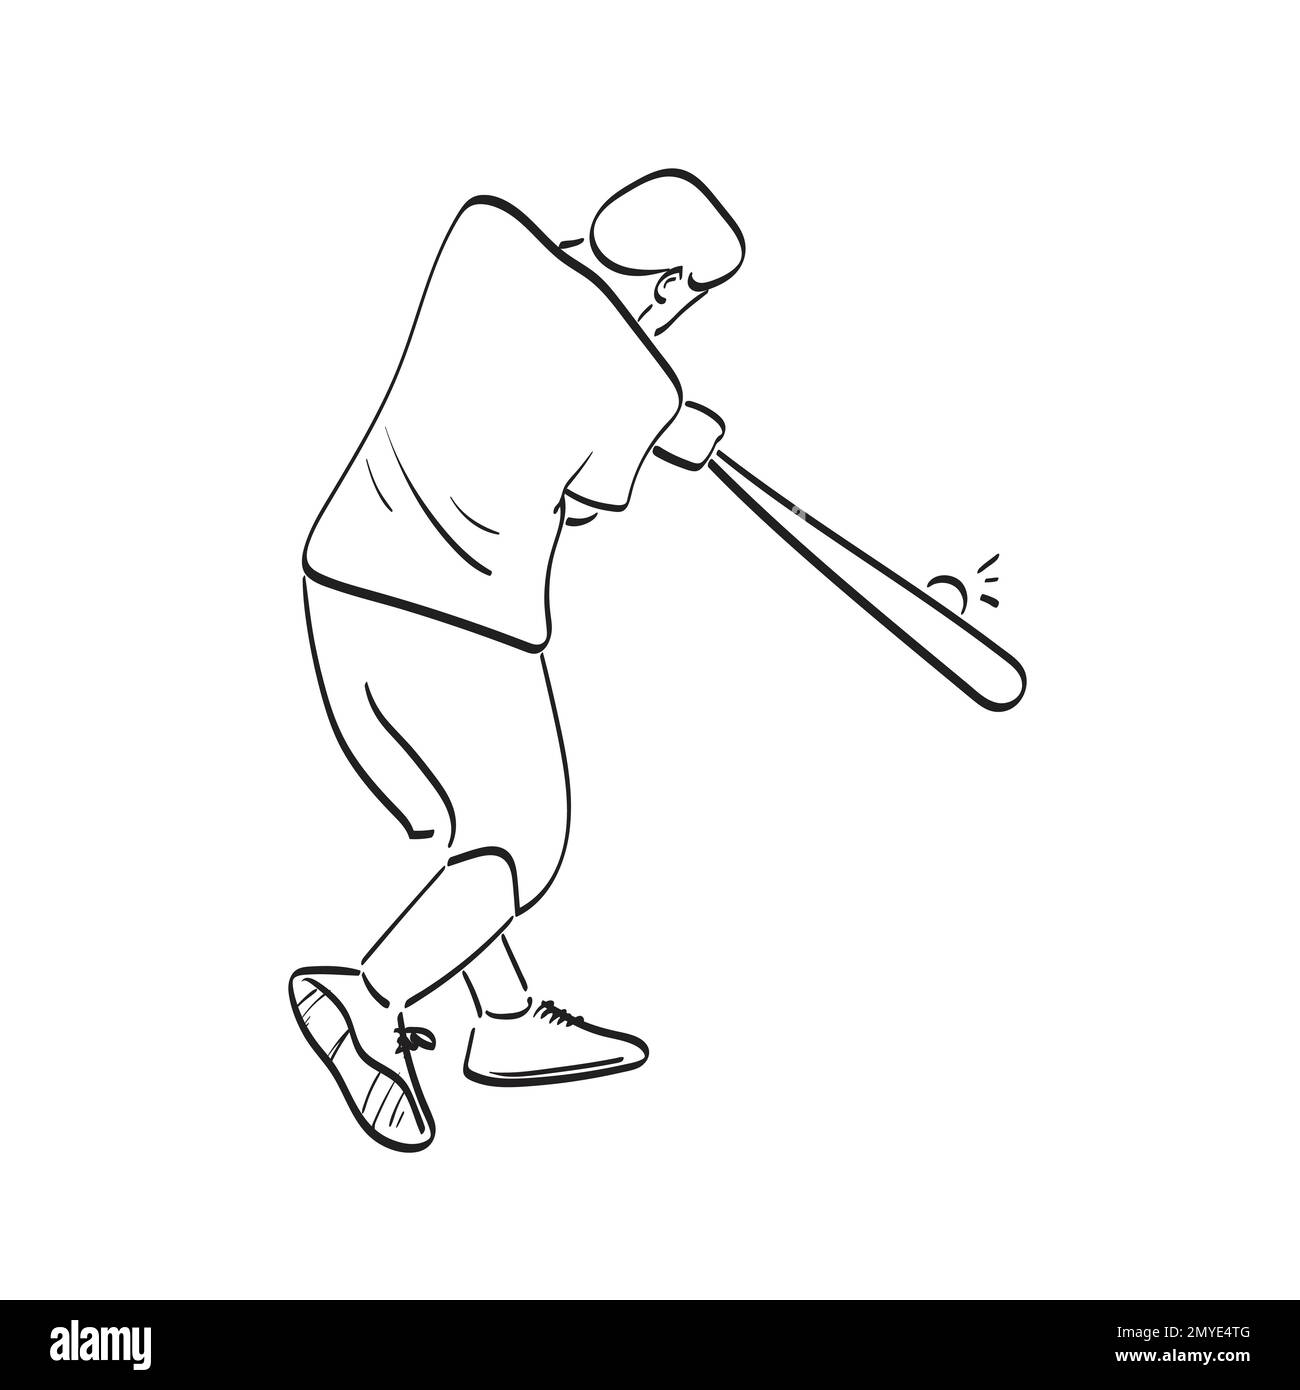 line art baseball batter hitting the ball illustration vector hand drawn isolated on white background Stock Vector